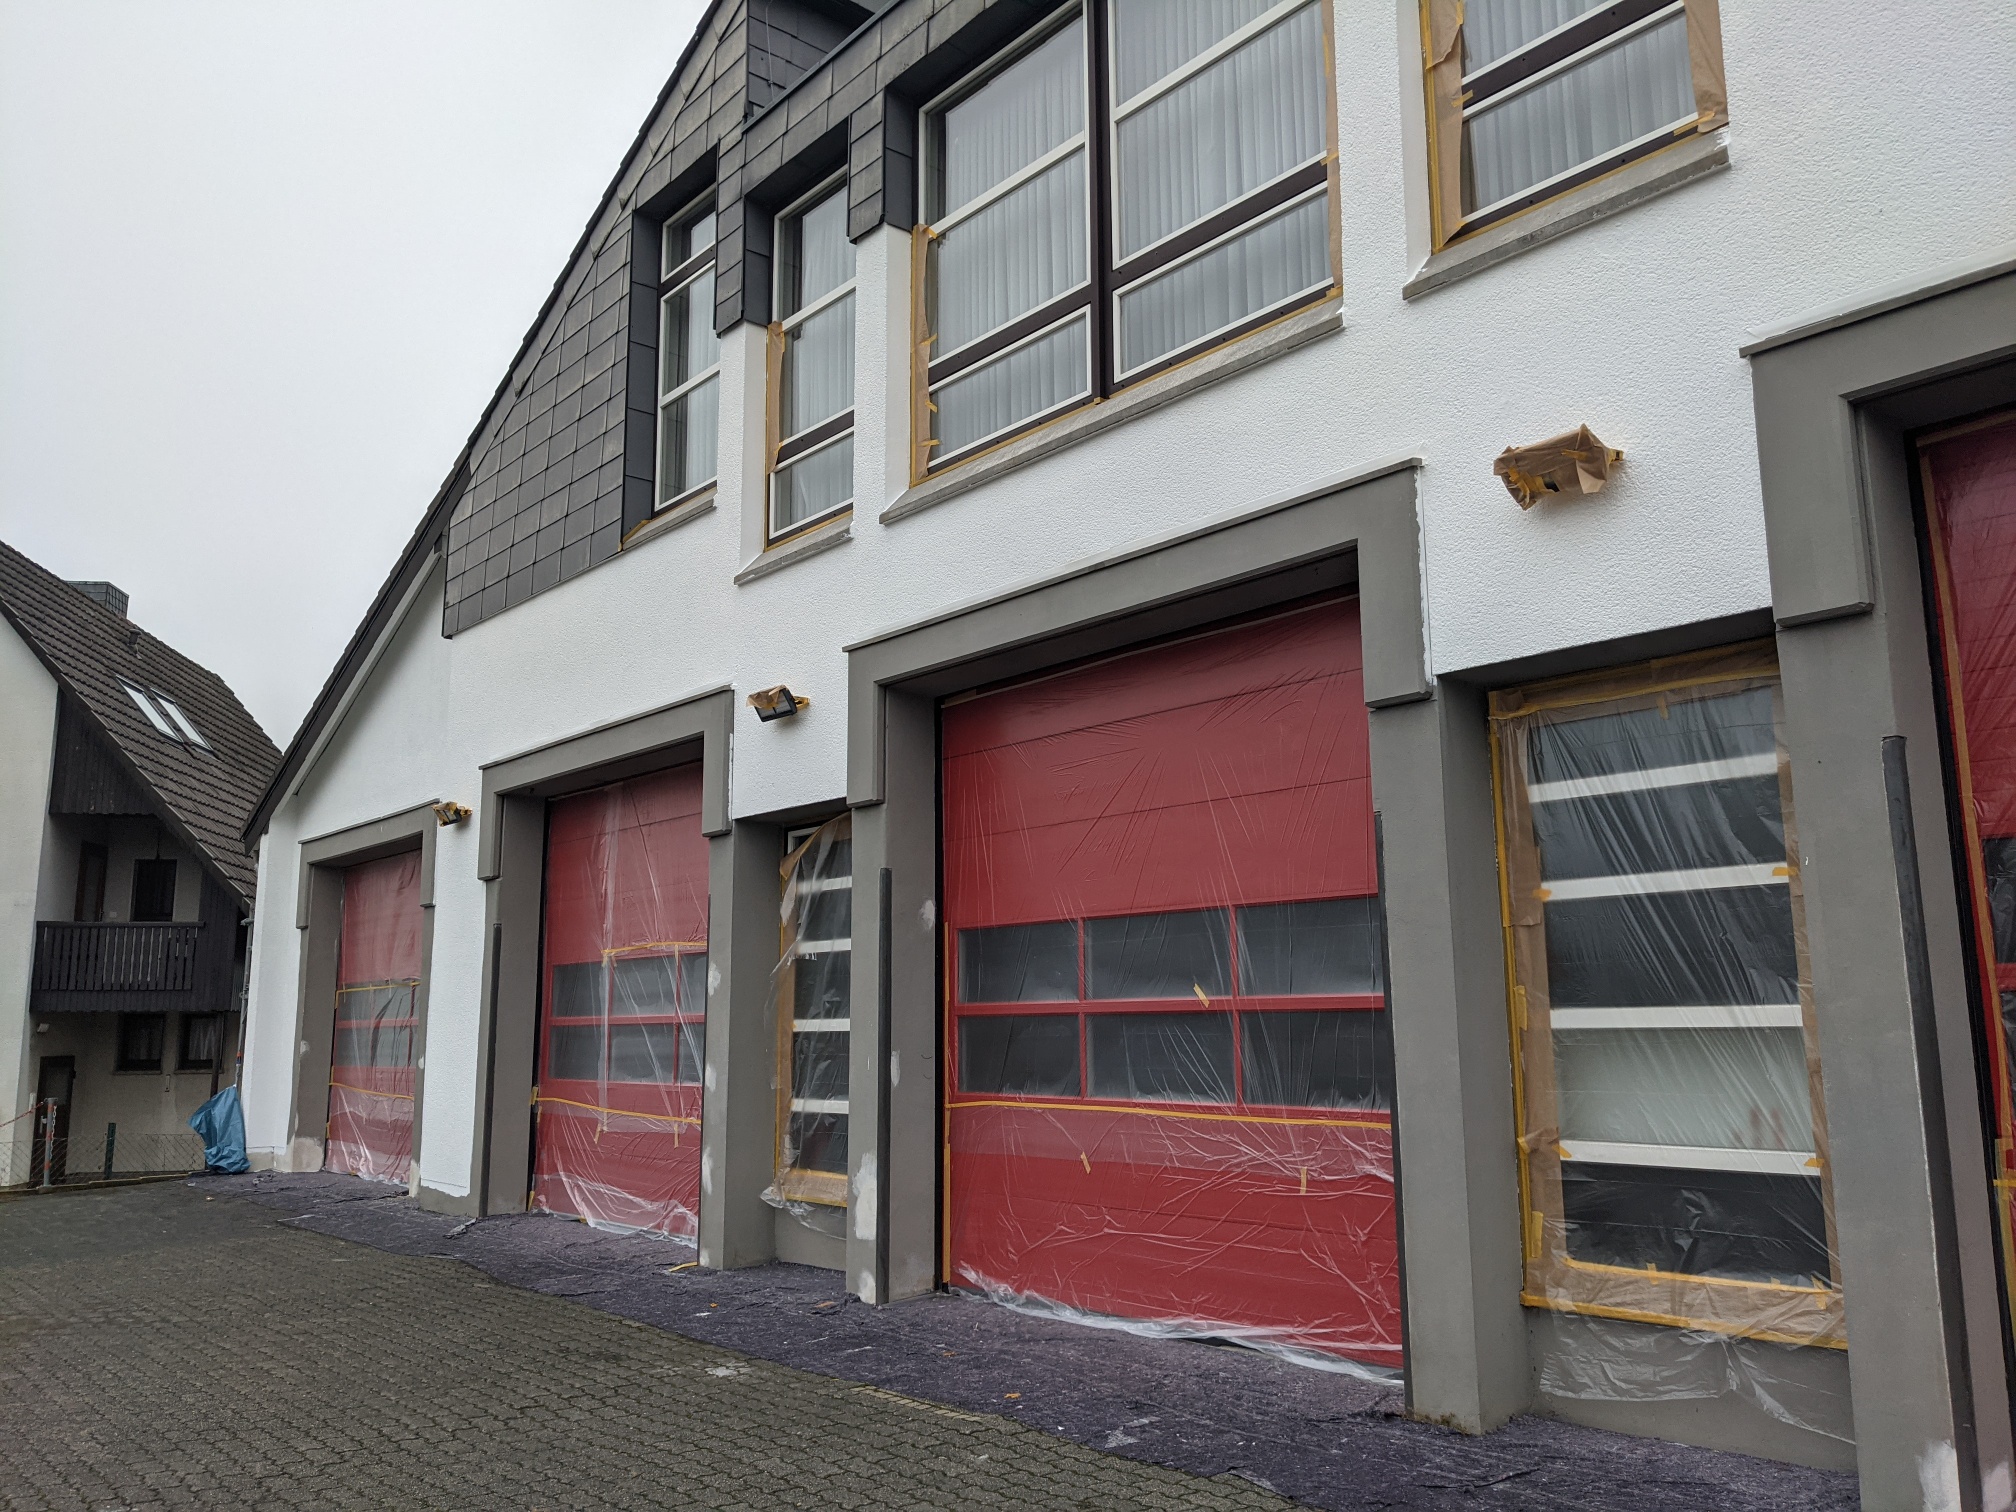 Die für einen Neuanstrich vorbereitete Fassade der Feuerwehr Hennef. Die roten Rolltore und Fenster sind mit Malerkrepp und Folie abgeklebt.